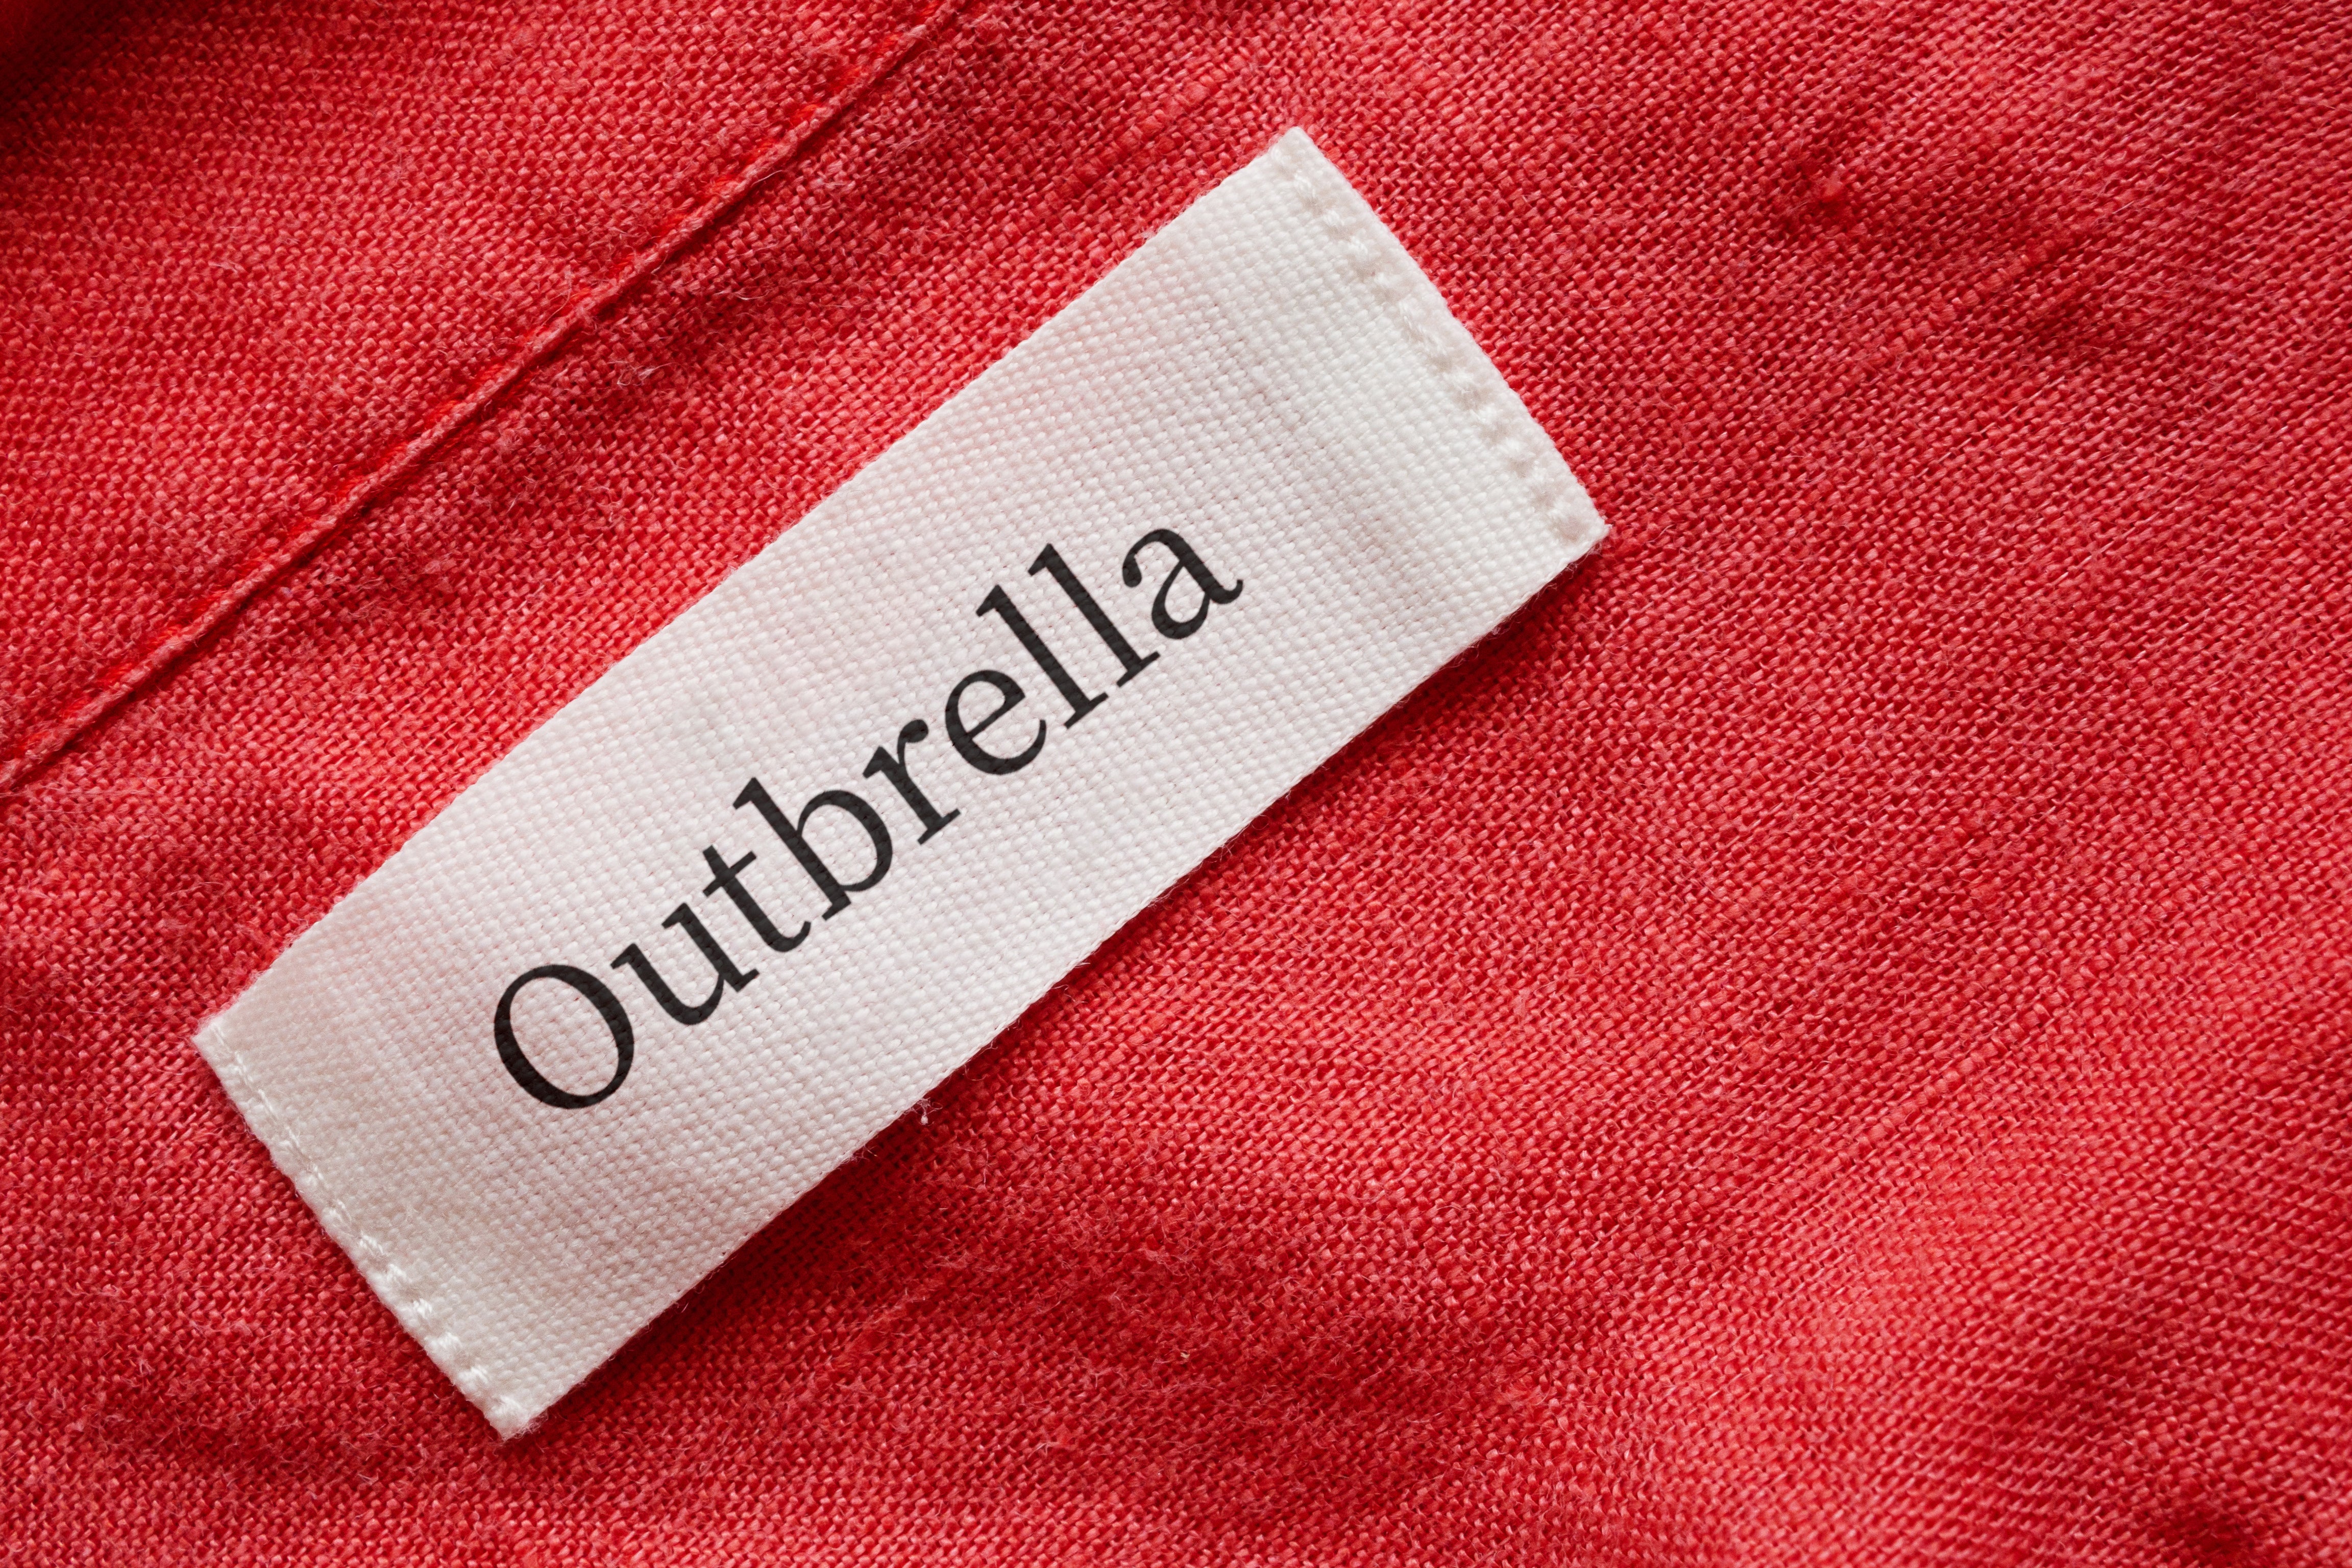 Outbrella Outdoor Fabric